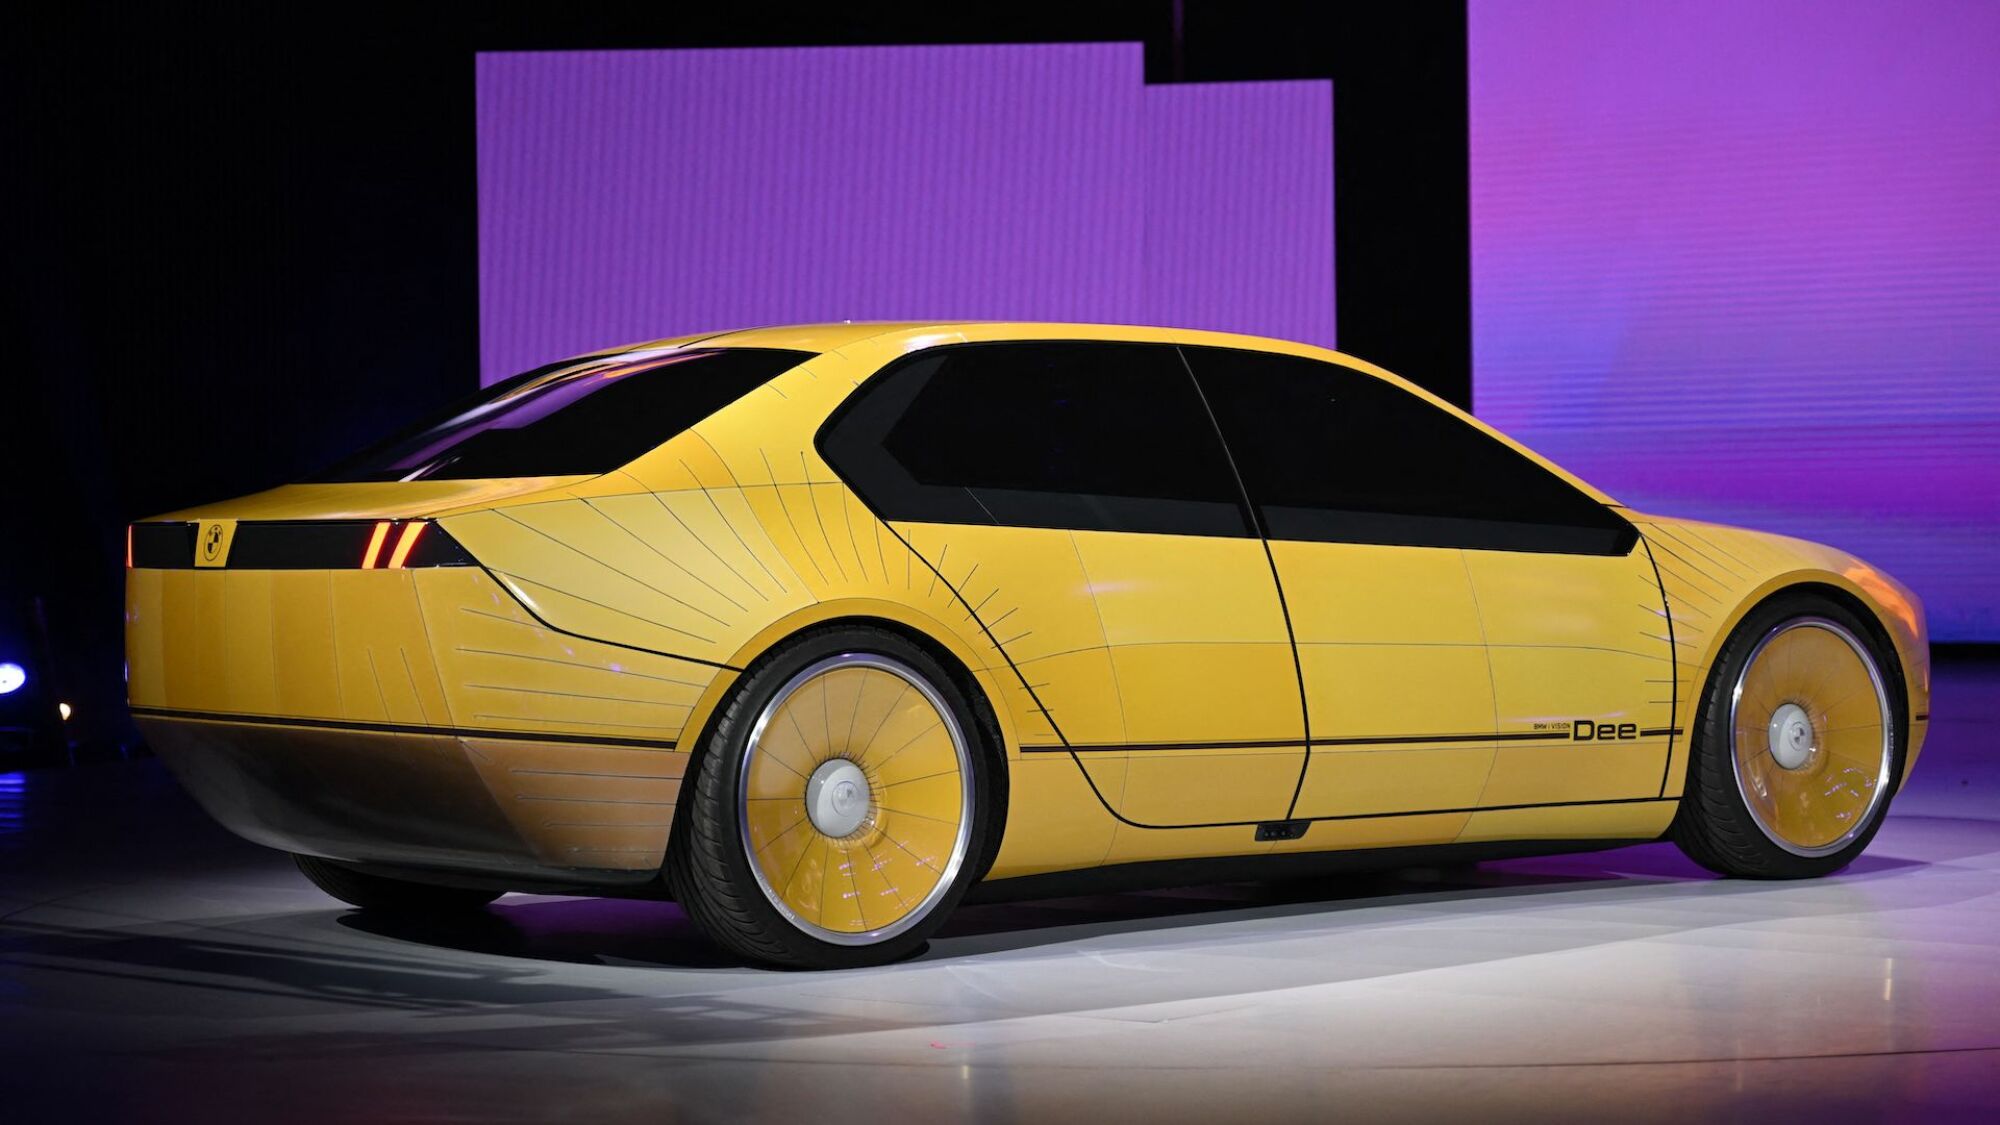 Une voiture jaune est assise sur scène lors d'une conférence technique.